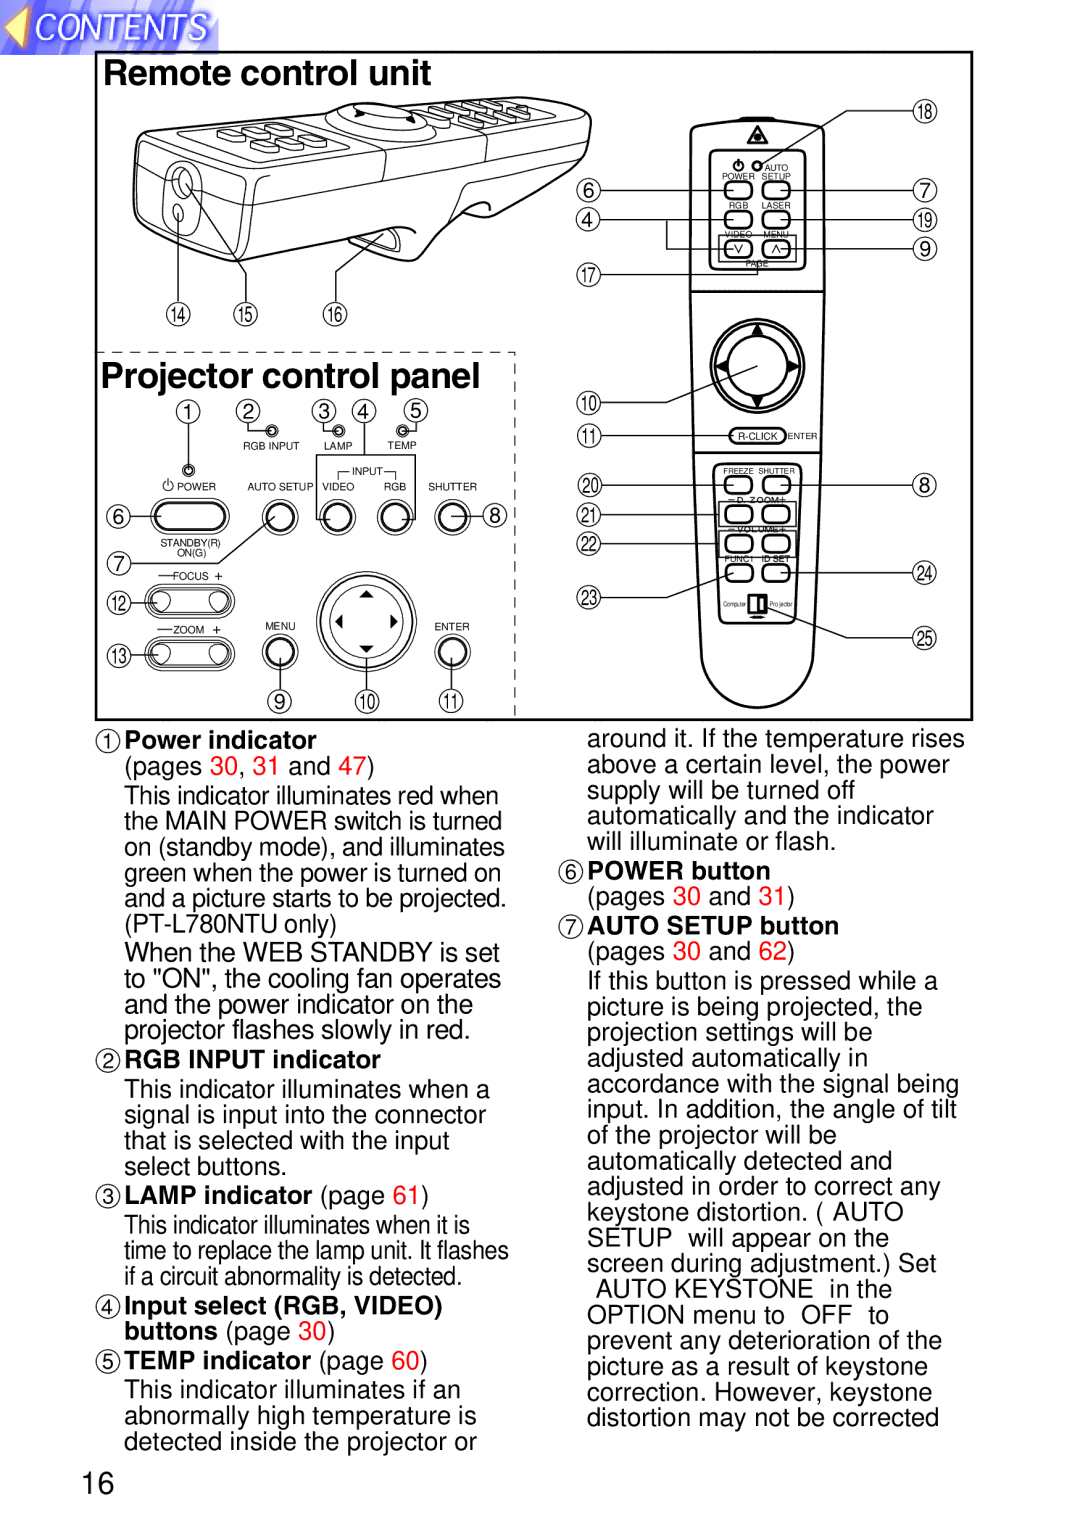 Panasonic TQBH9003-6, PT-L750U R manual Remote control unit, Projector control panel 